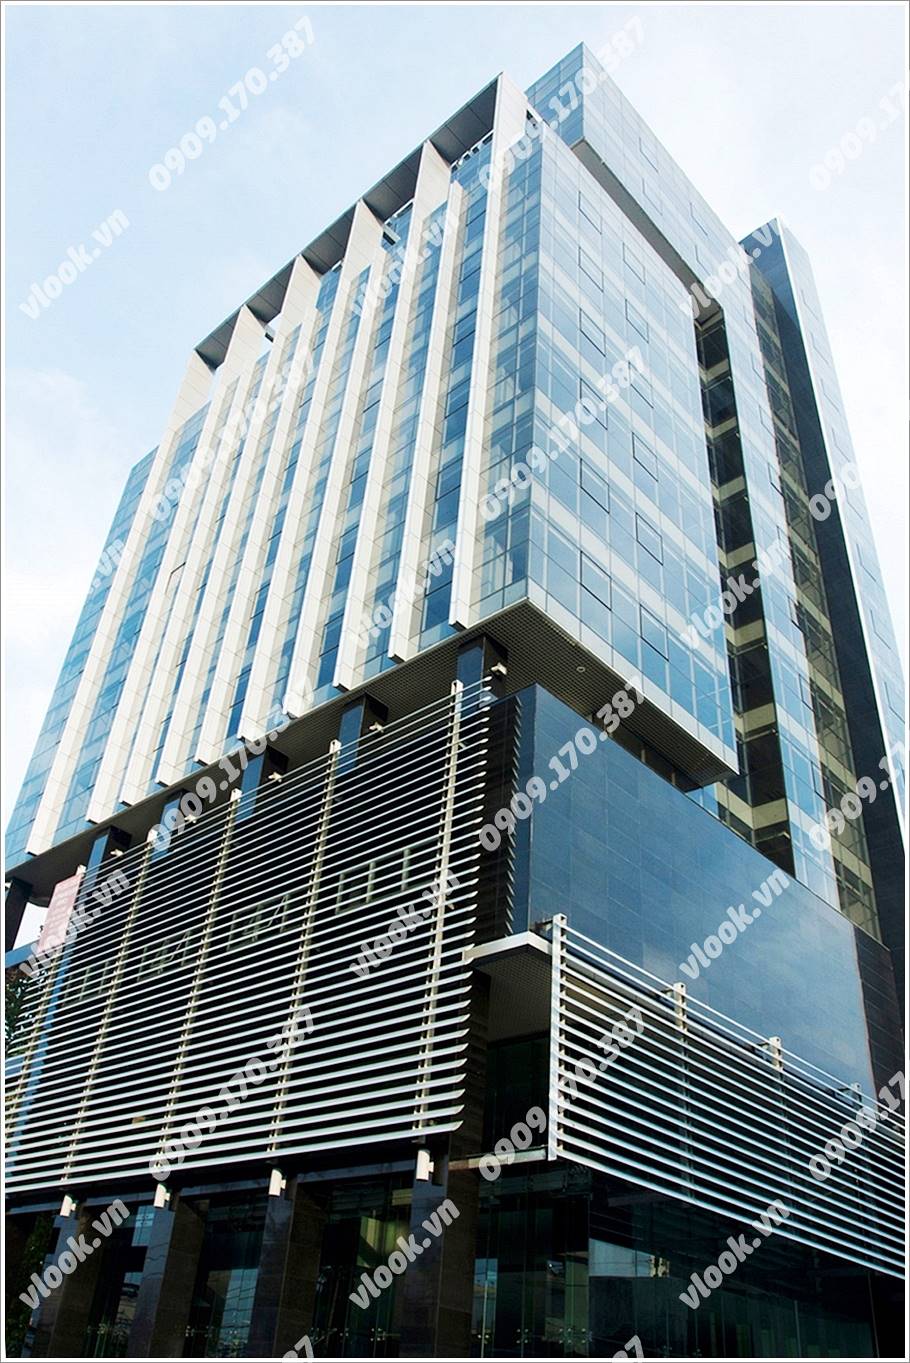 Cao ốc cho thuê văn phòng HMC Tower Đinh Tiên Hoàng Quận 1 TPHCM - vlook.vn